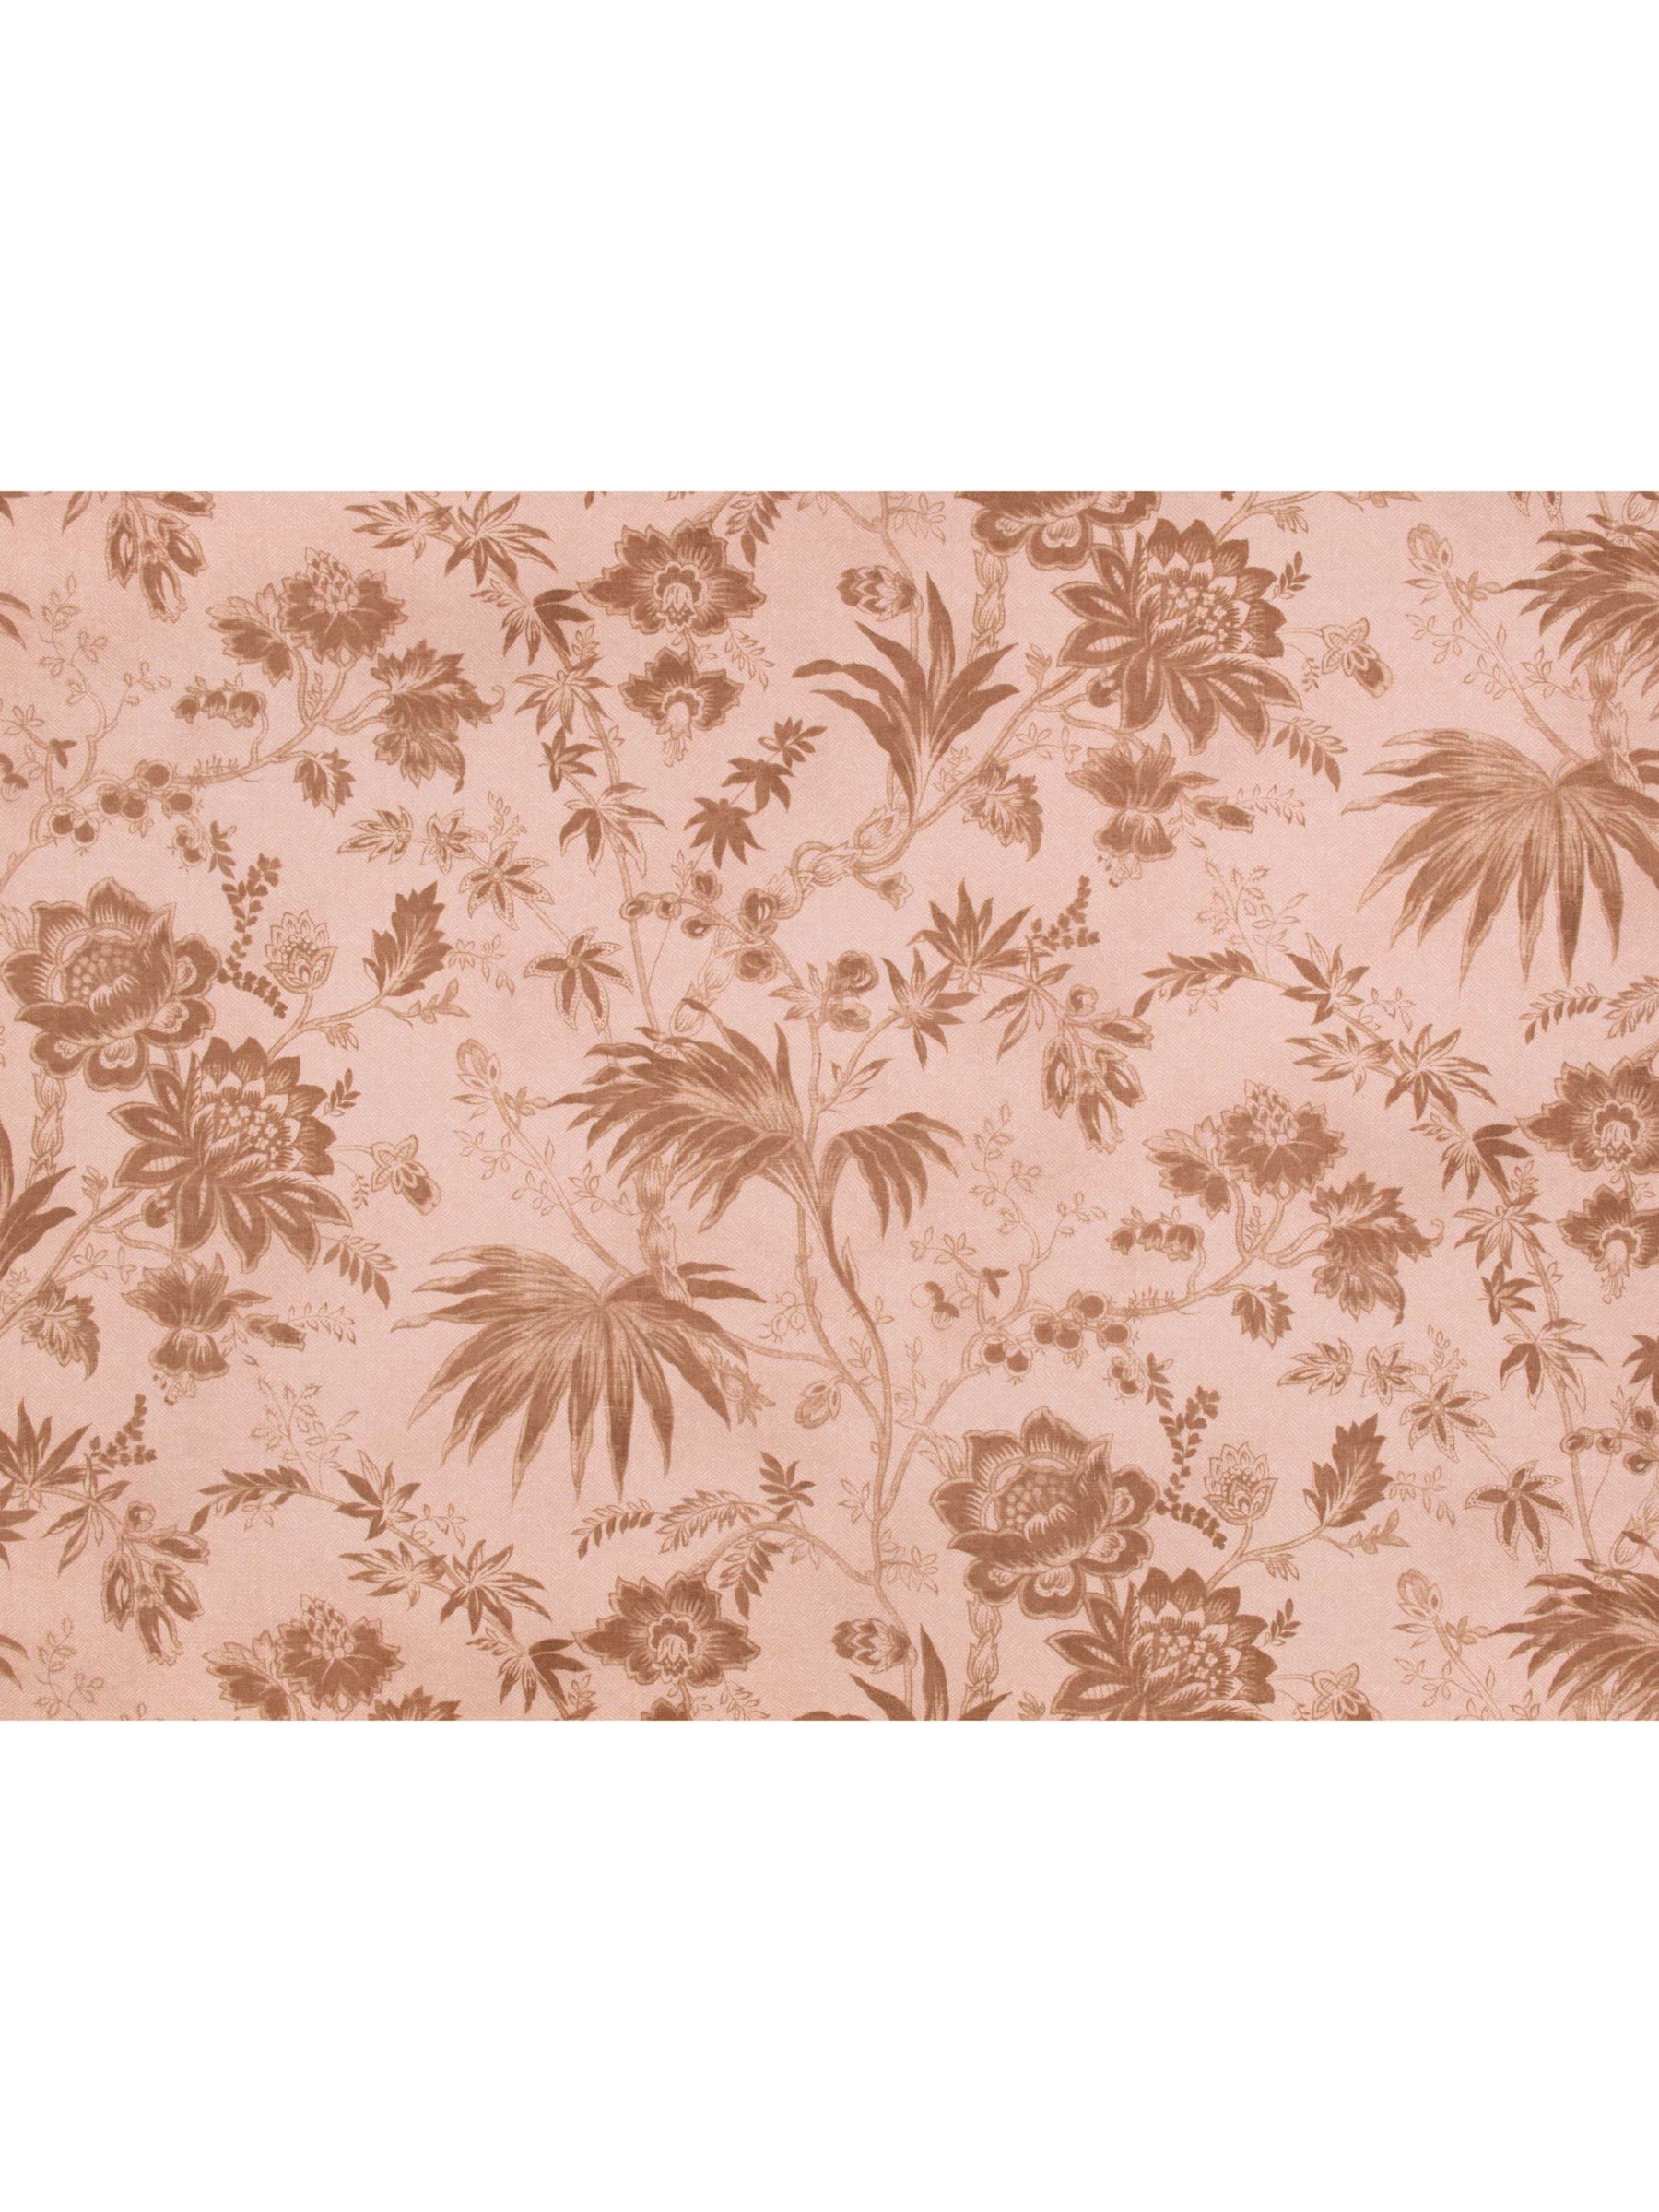 Romo Chiya Furnishing Fabric, Lotus